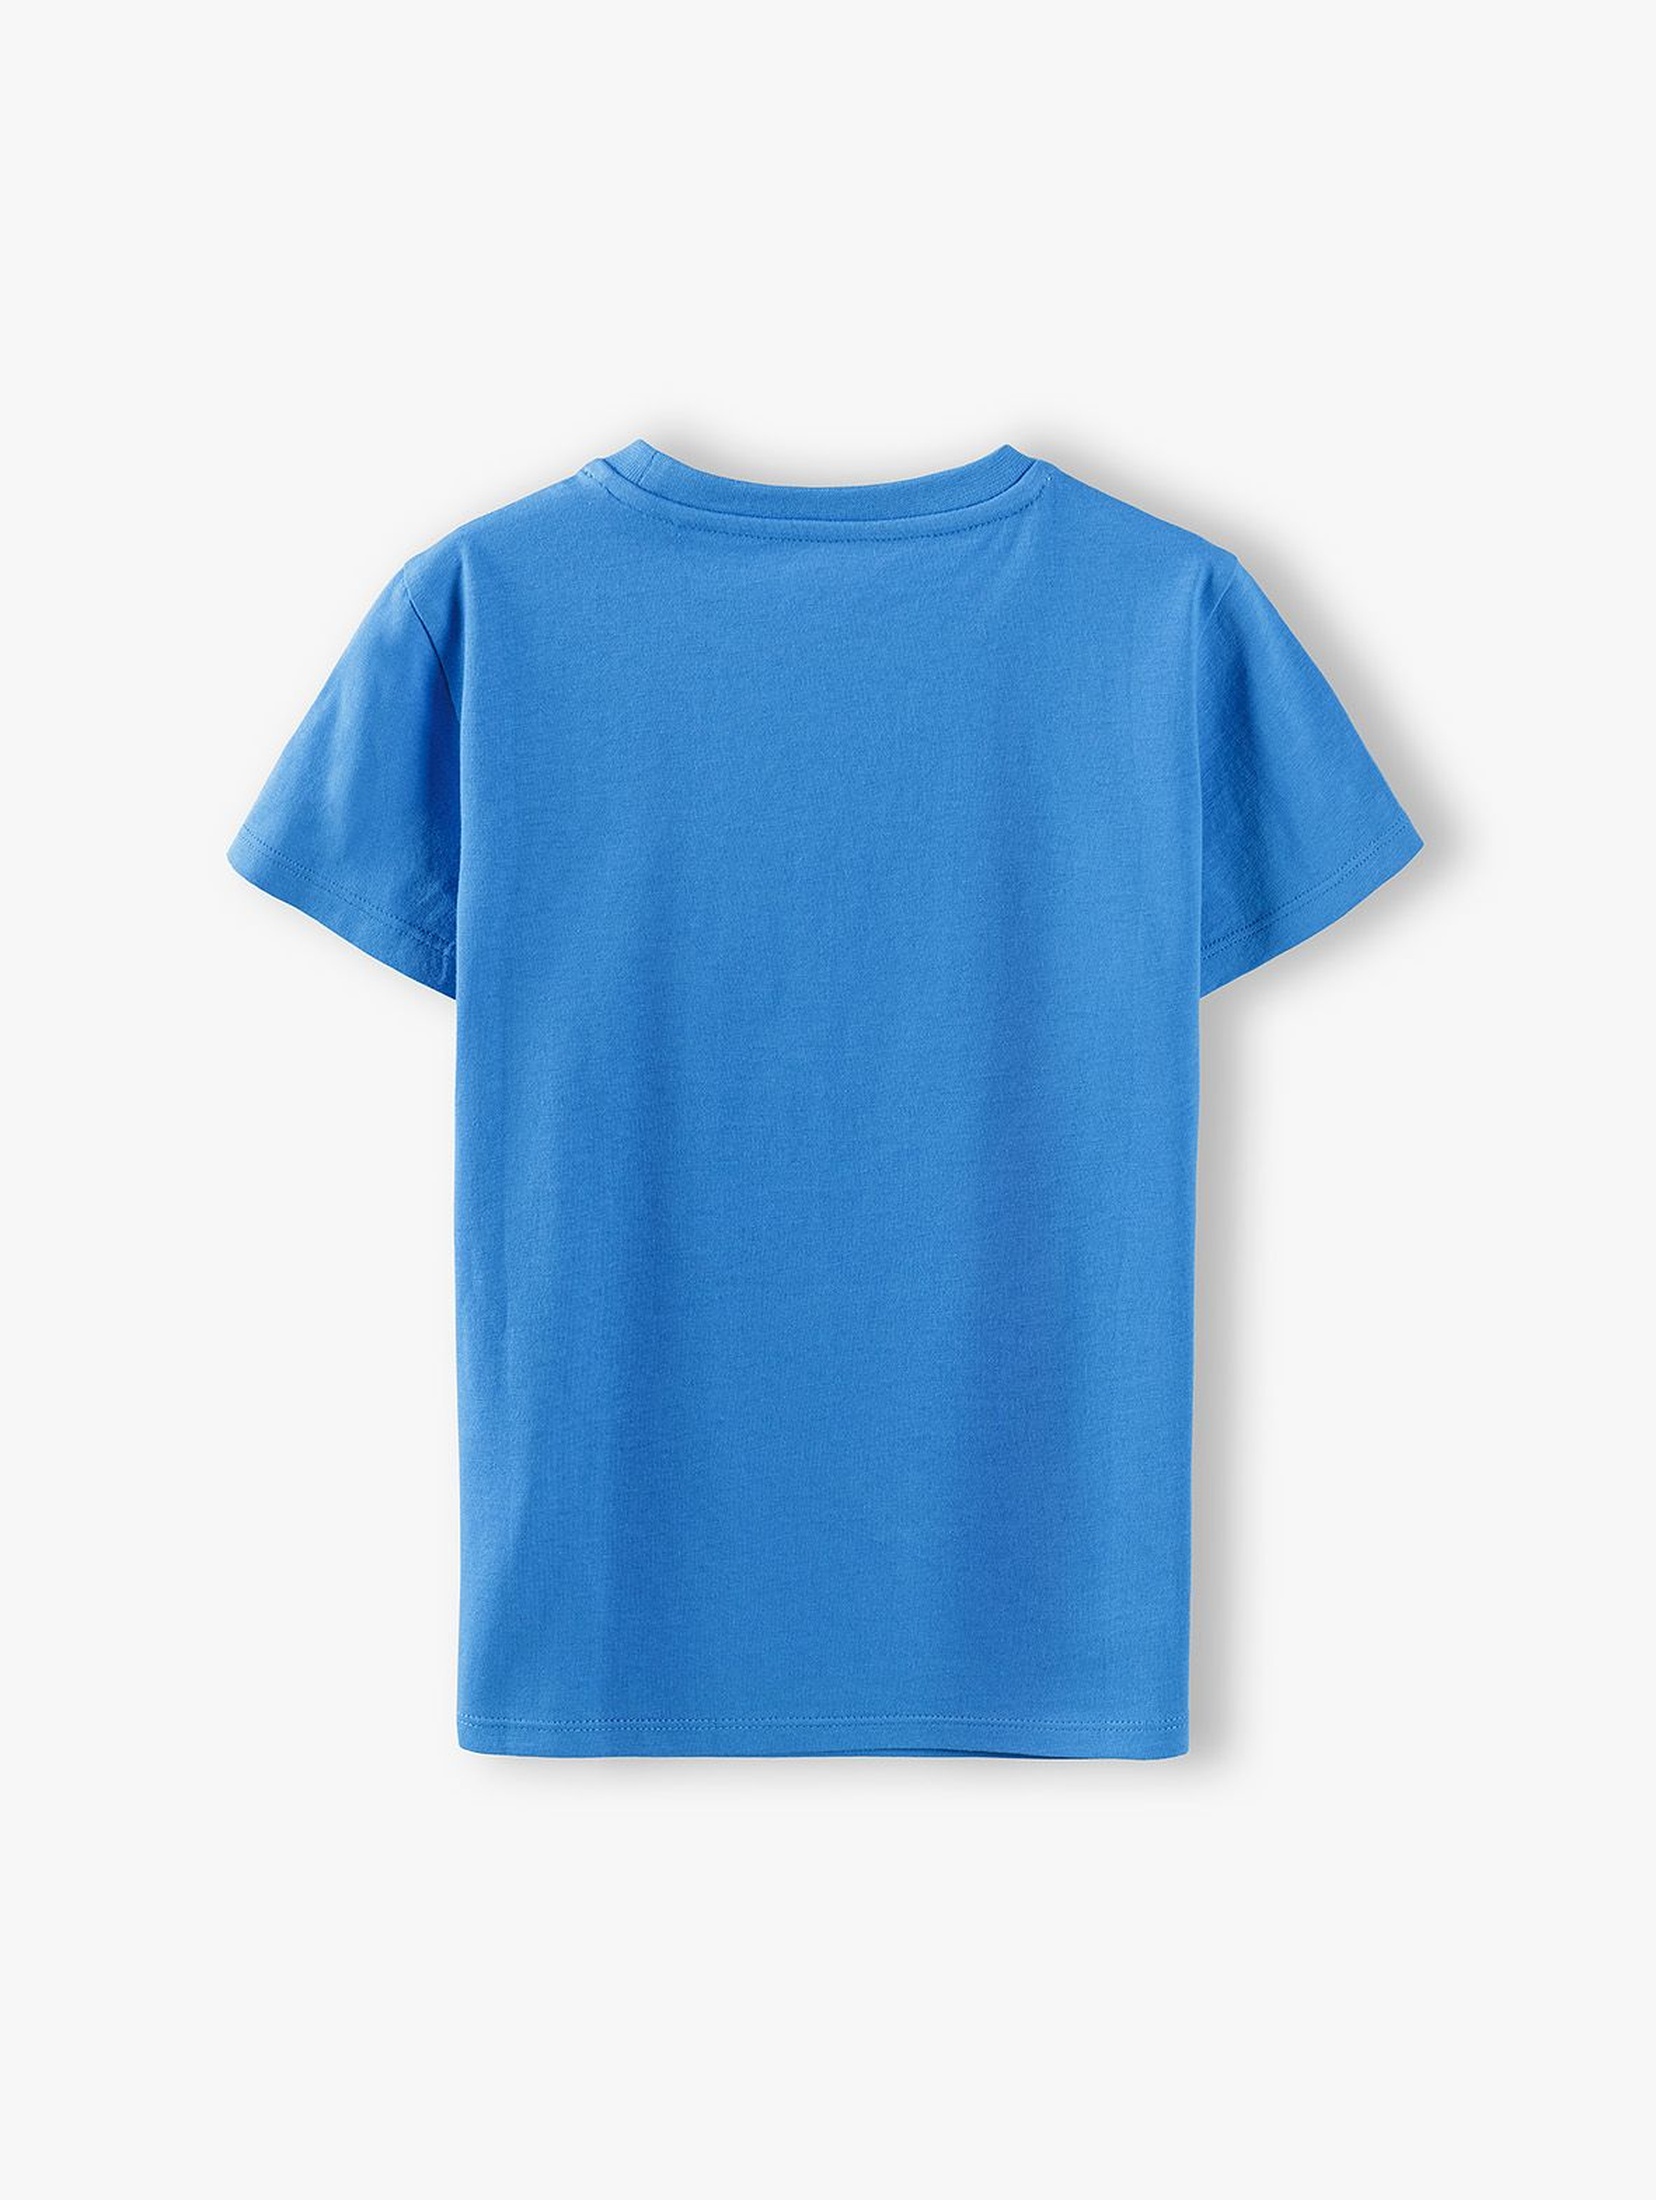 T-shirt chłopięcy niebieski z nadrukiem - 100% bawełna